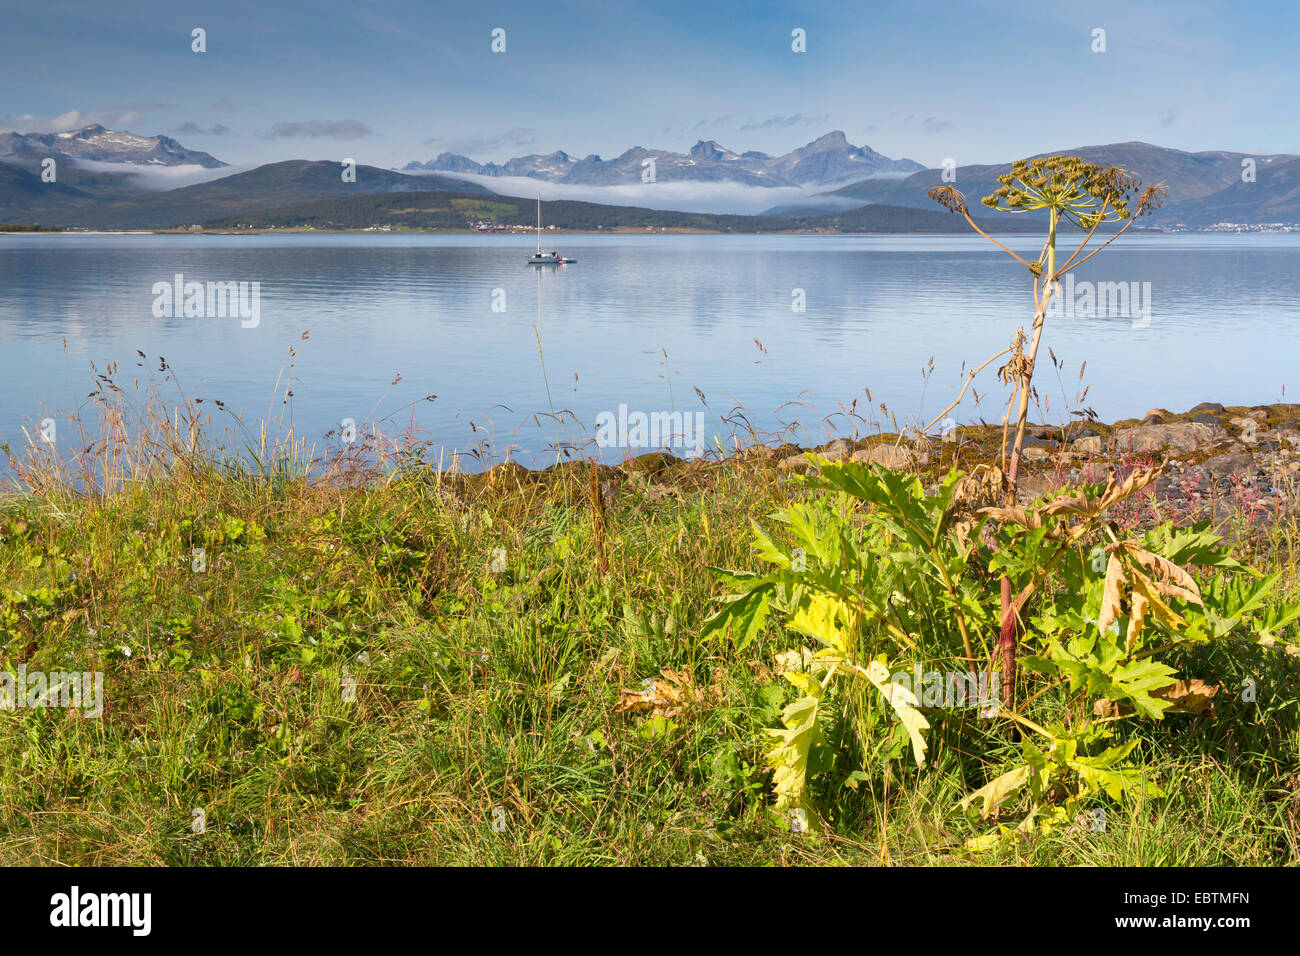 Heracleum (Heracleum spec.), la berce laineuse sur la côte en automne, Store Blamann en arrière-plan, la Norvège, Troms, Sandnessund, Kvaloeya Banque D'Images